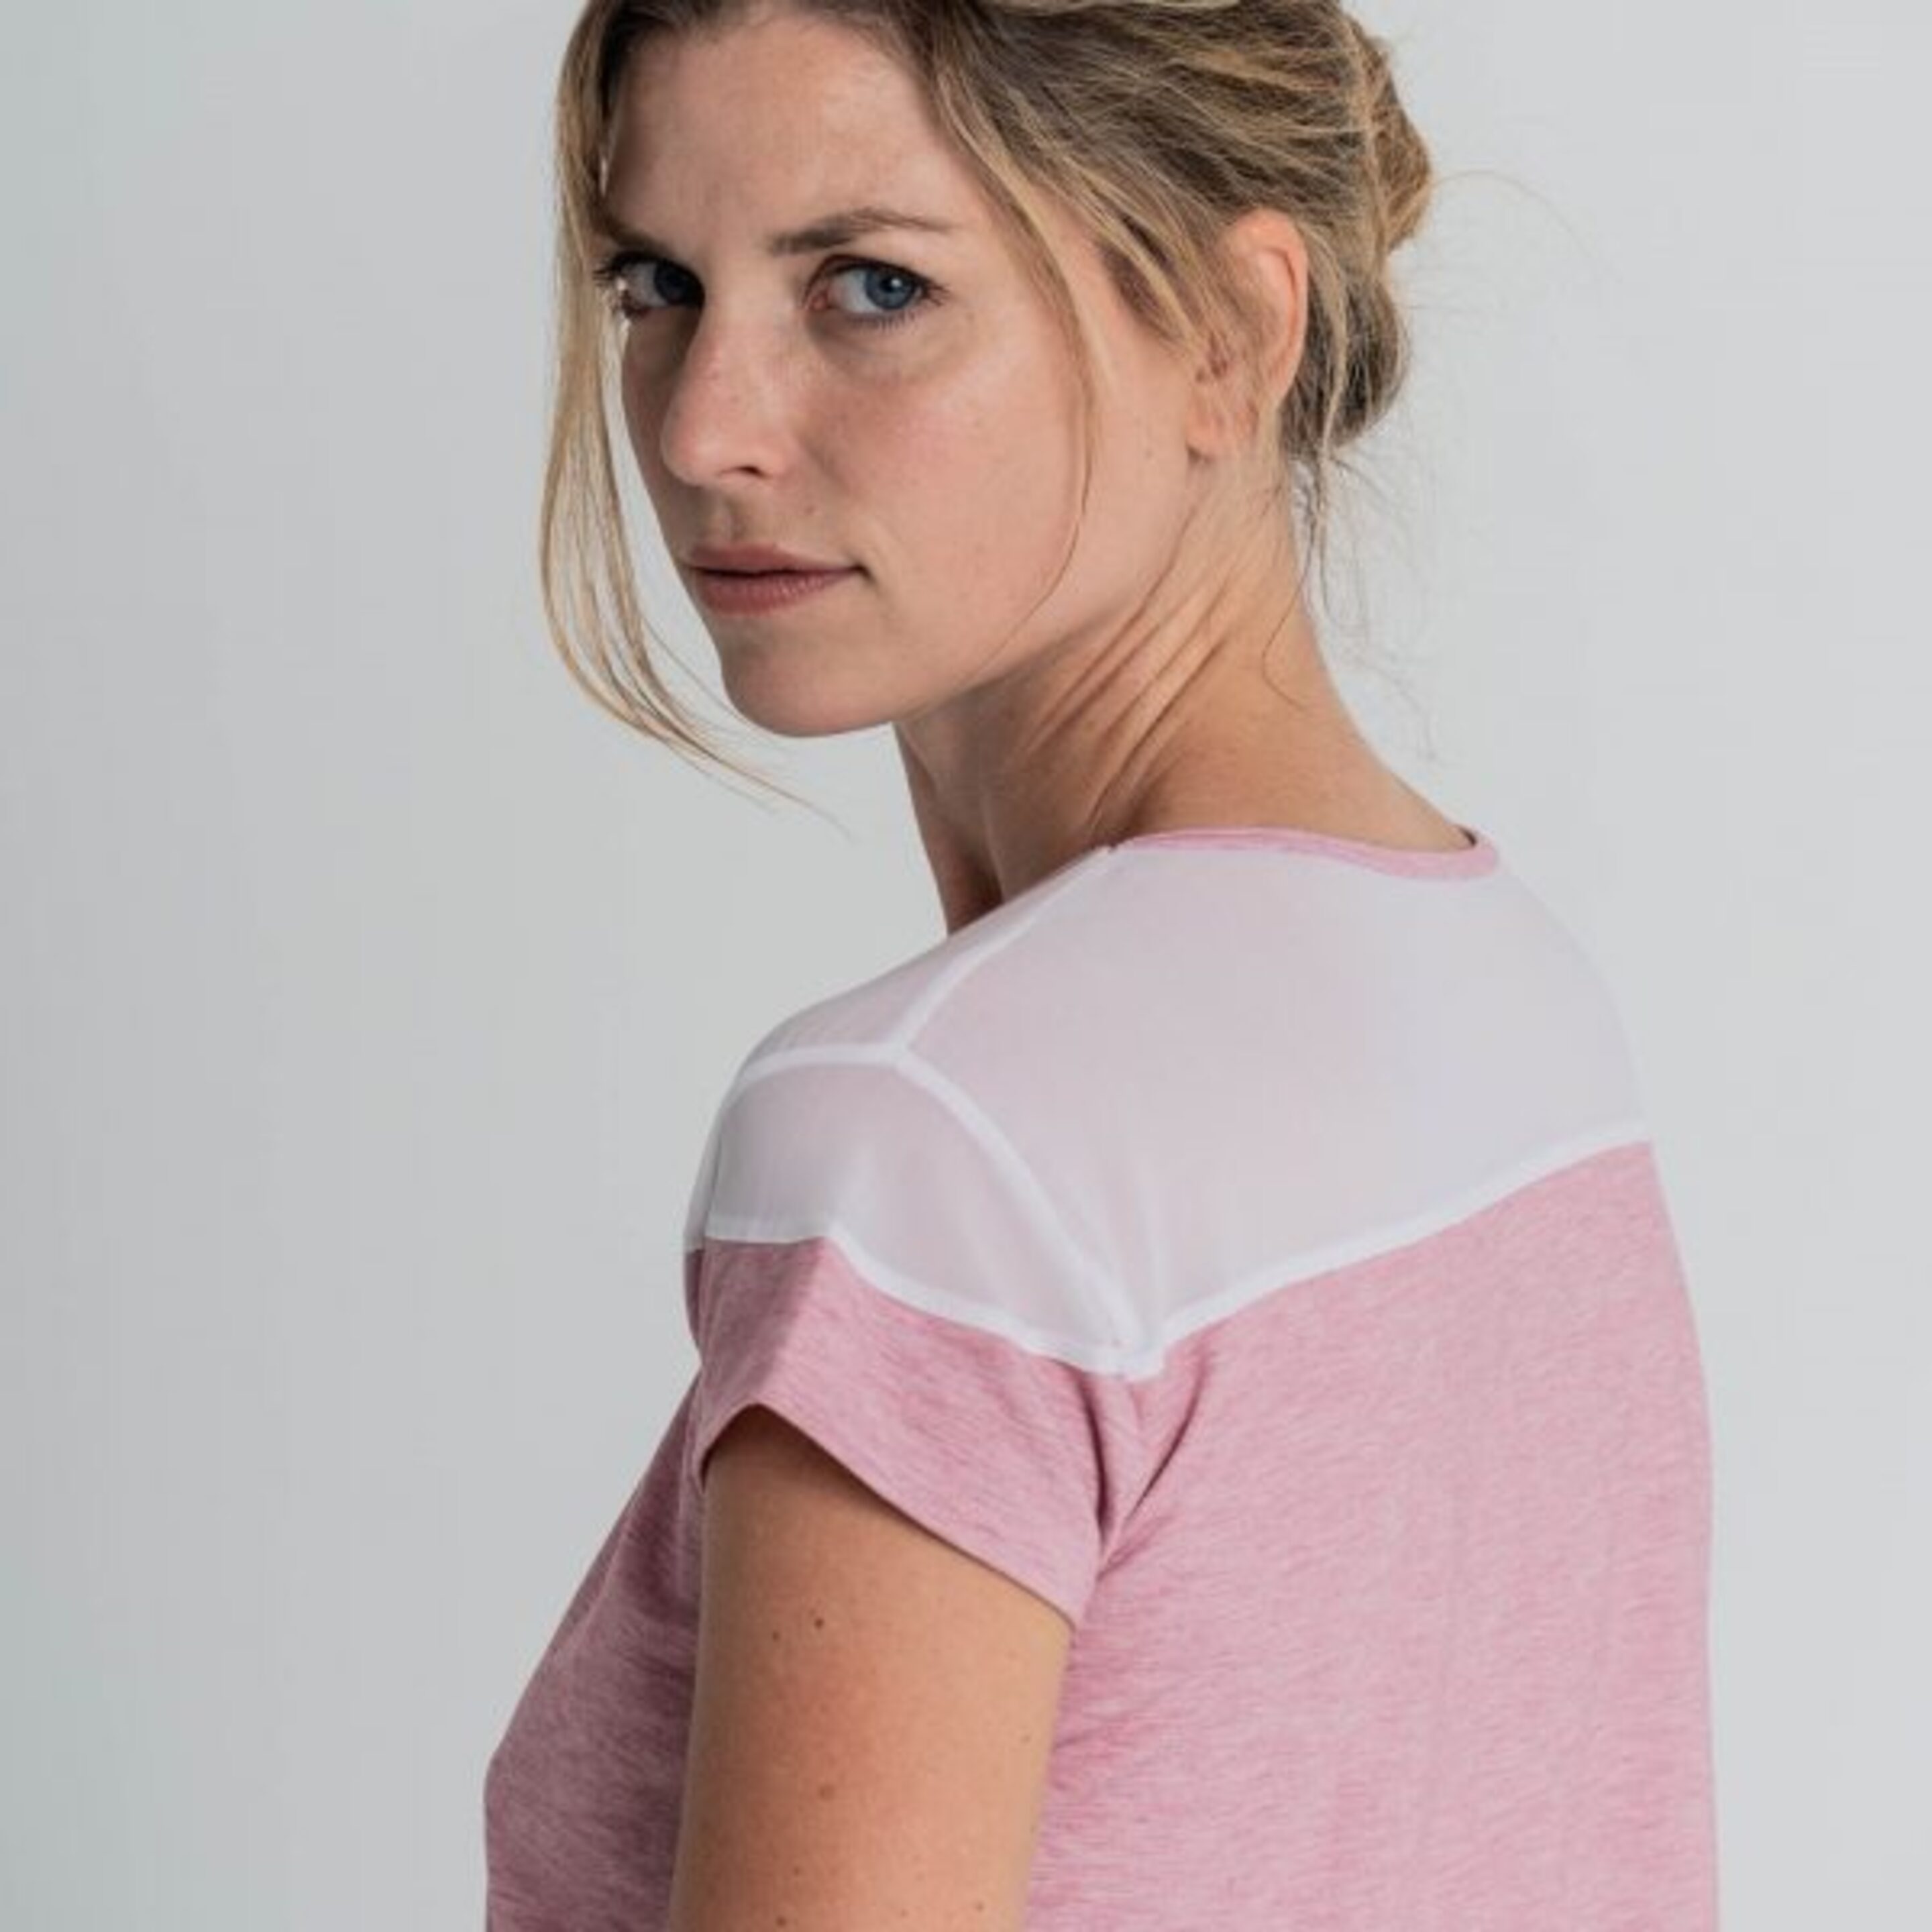 Camiseta Fitness Transpirable Rosa, Alana